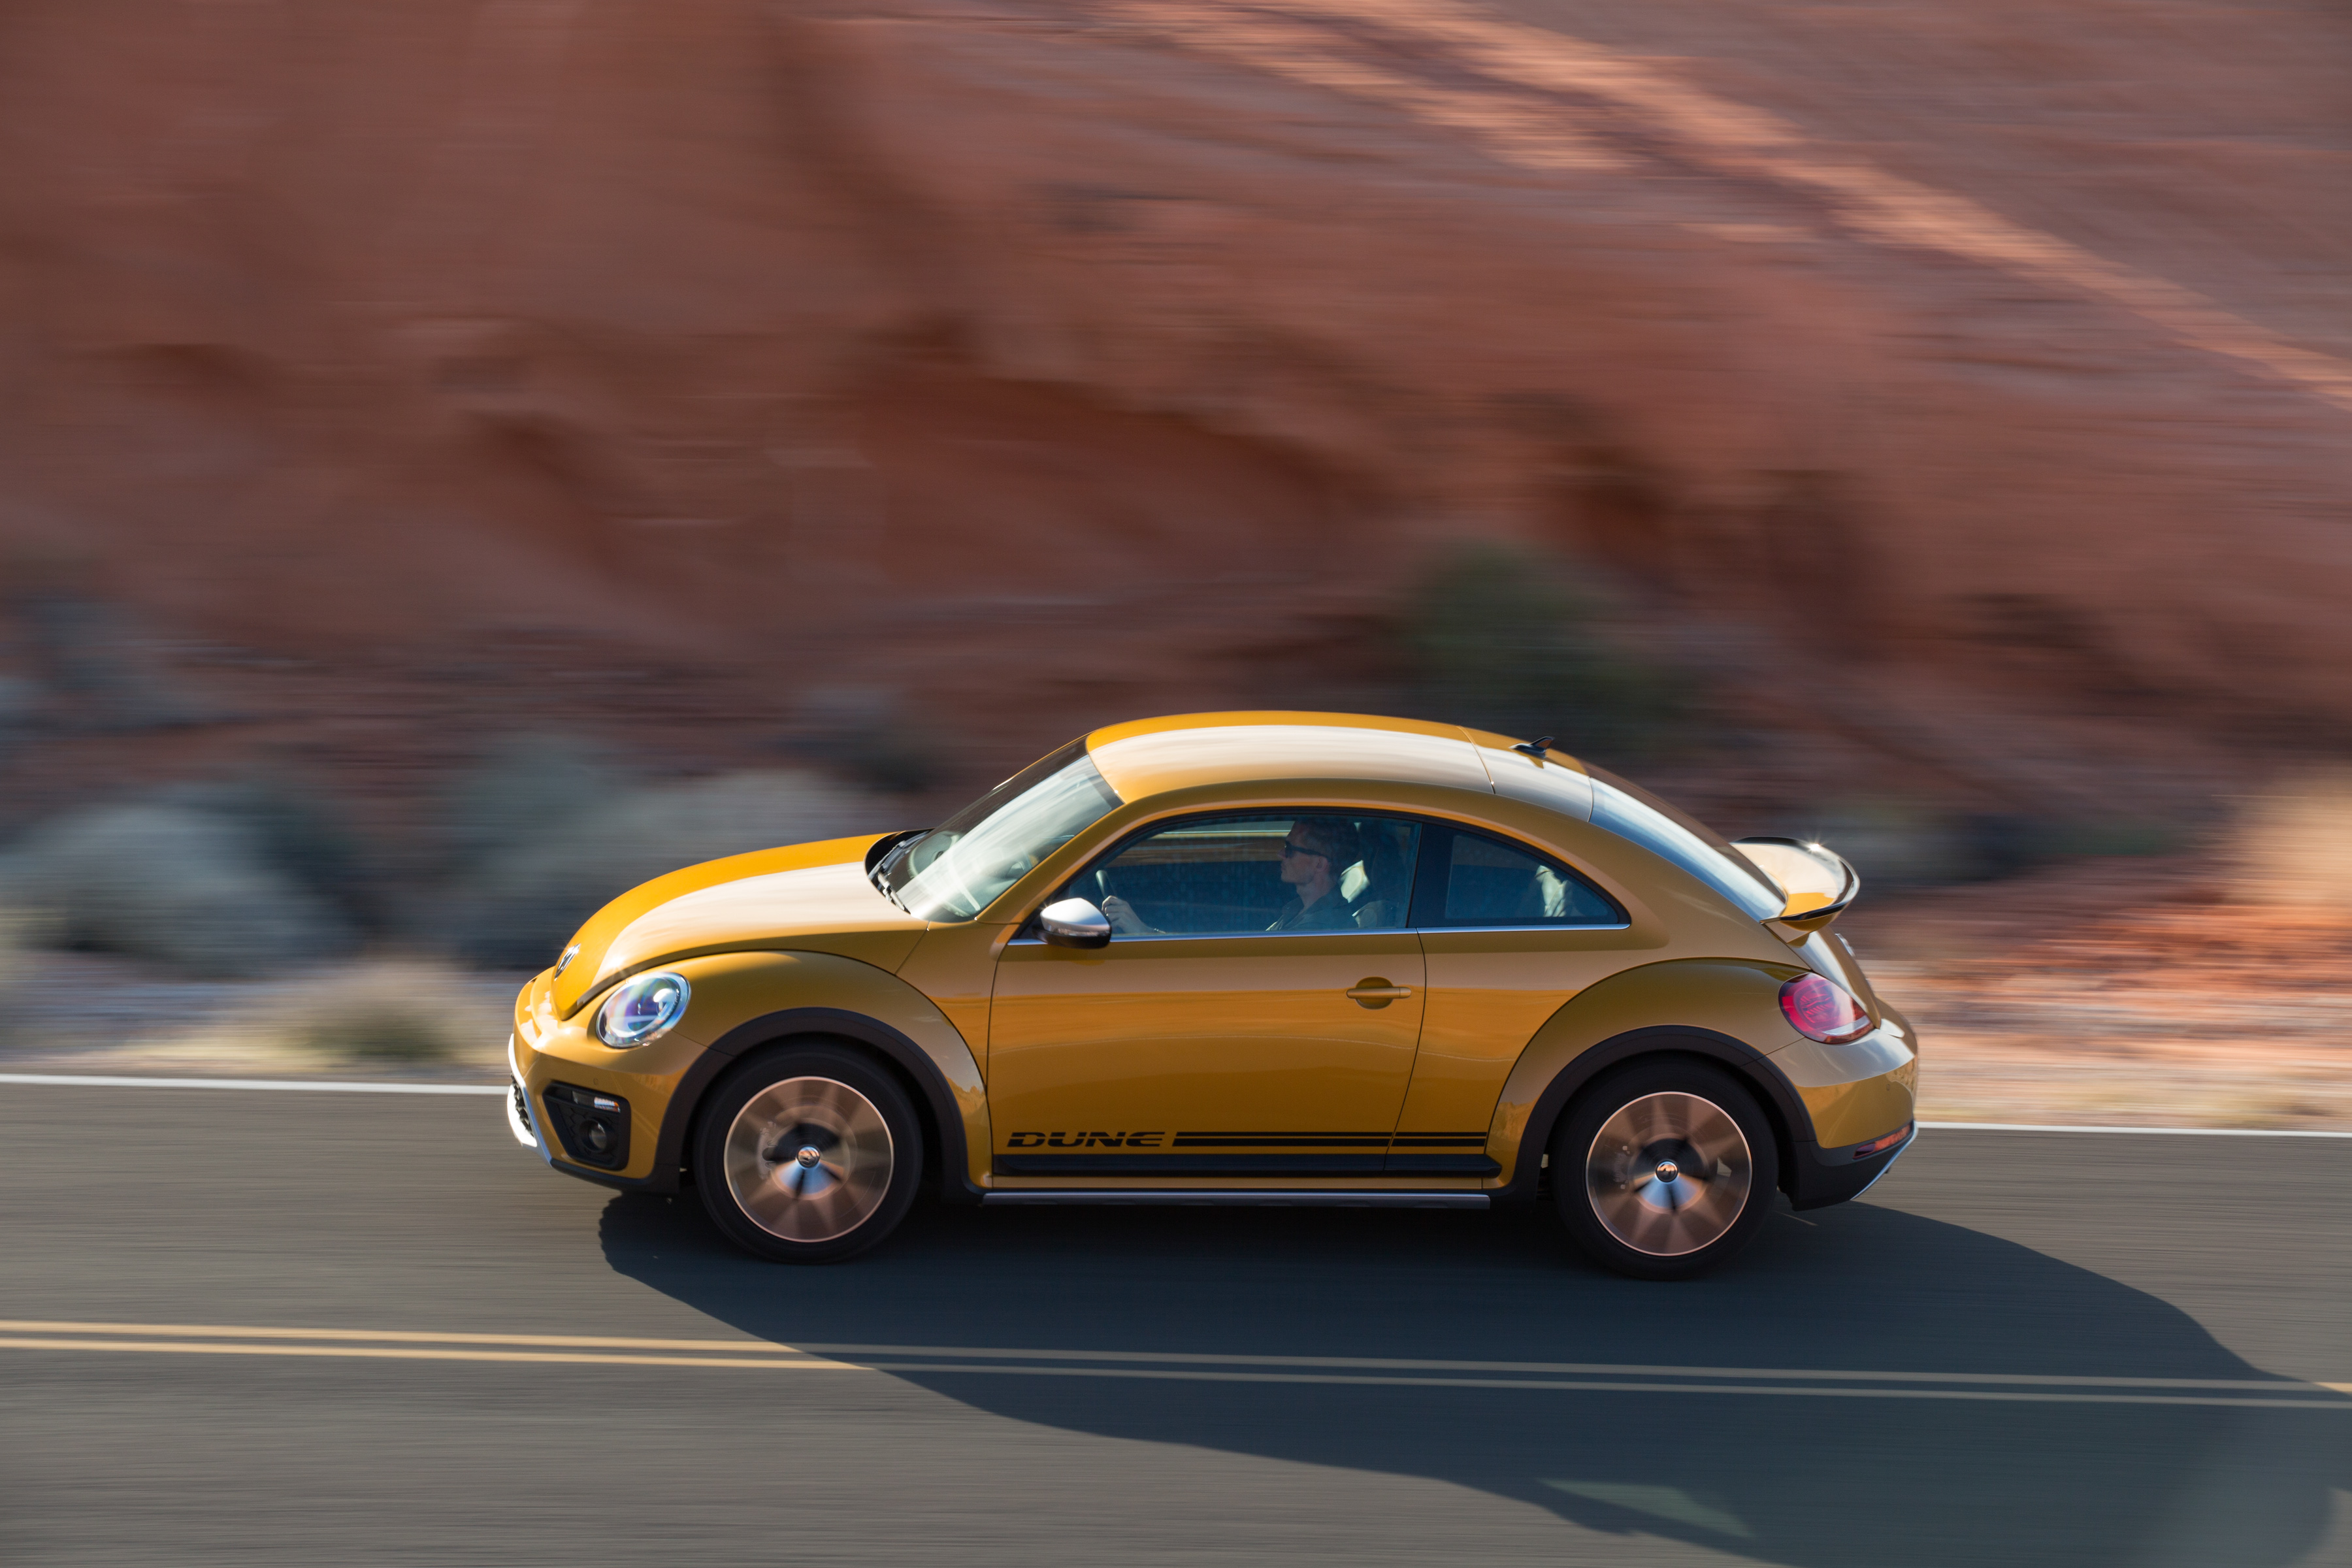 Volkswagen Beetle hd 2016